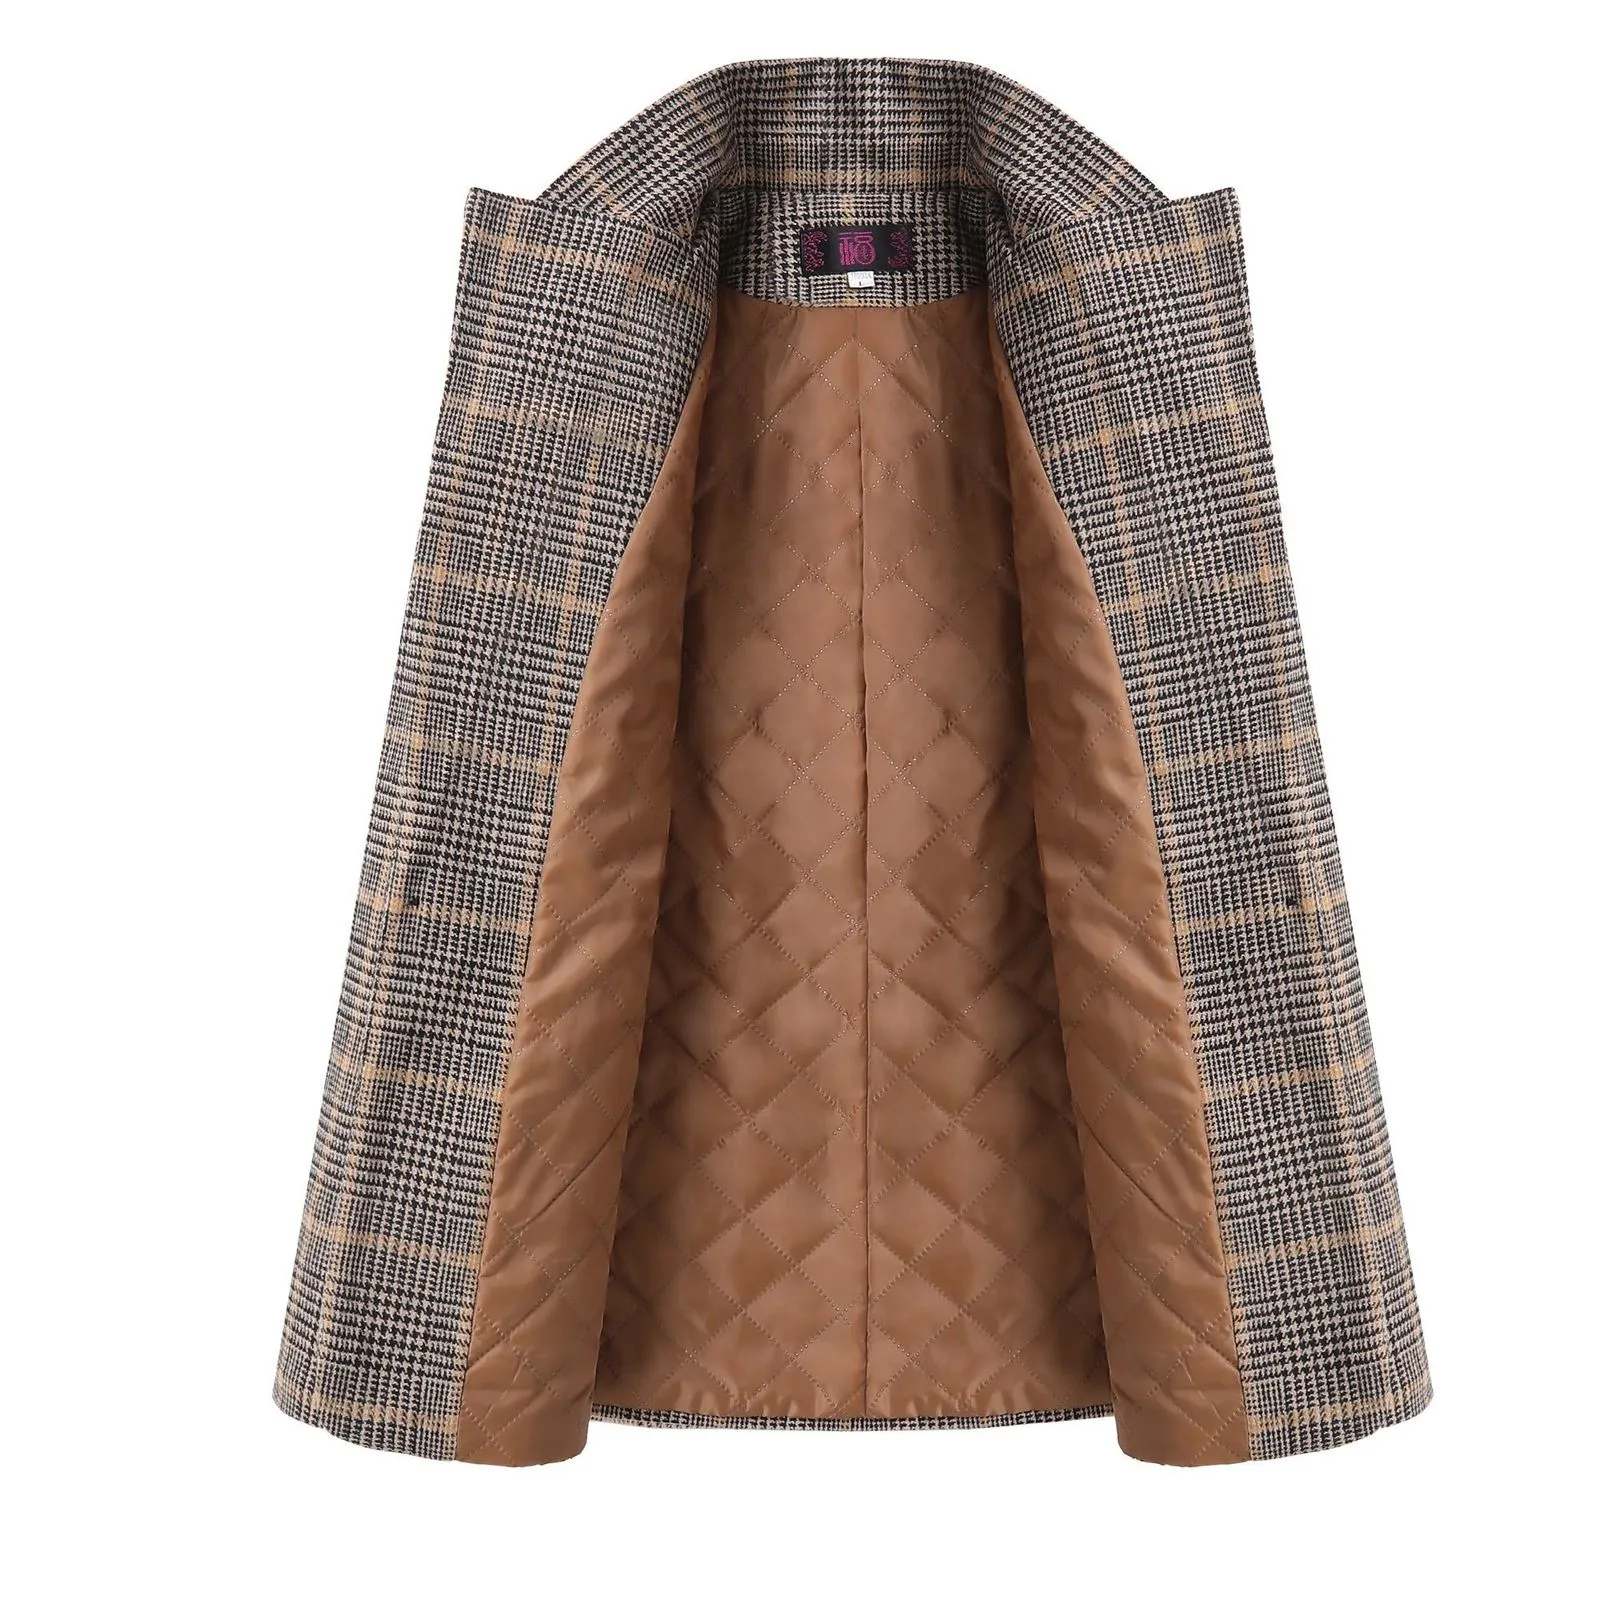 Trajes de mujer Blazers Otoño Invierno Vintage traje a cuadros chaqueta de lana señoras Slim Casual chaqueta de lana abrigo de una botonadura